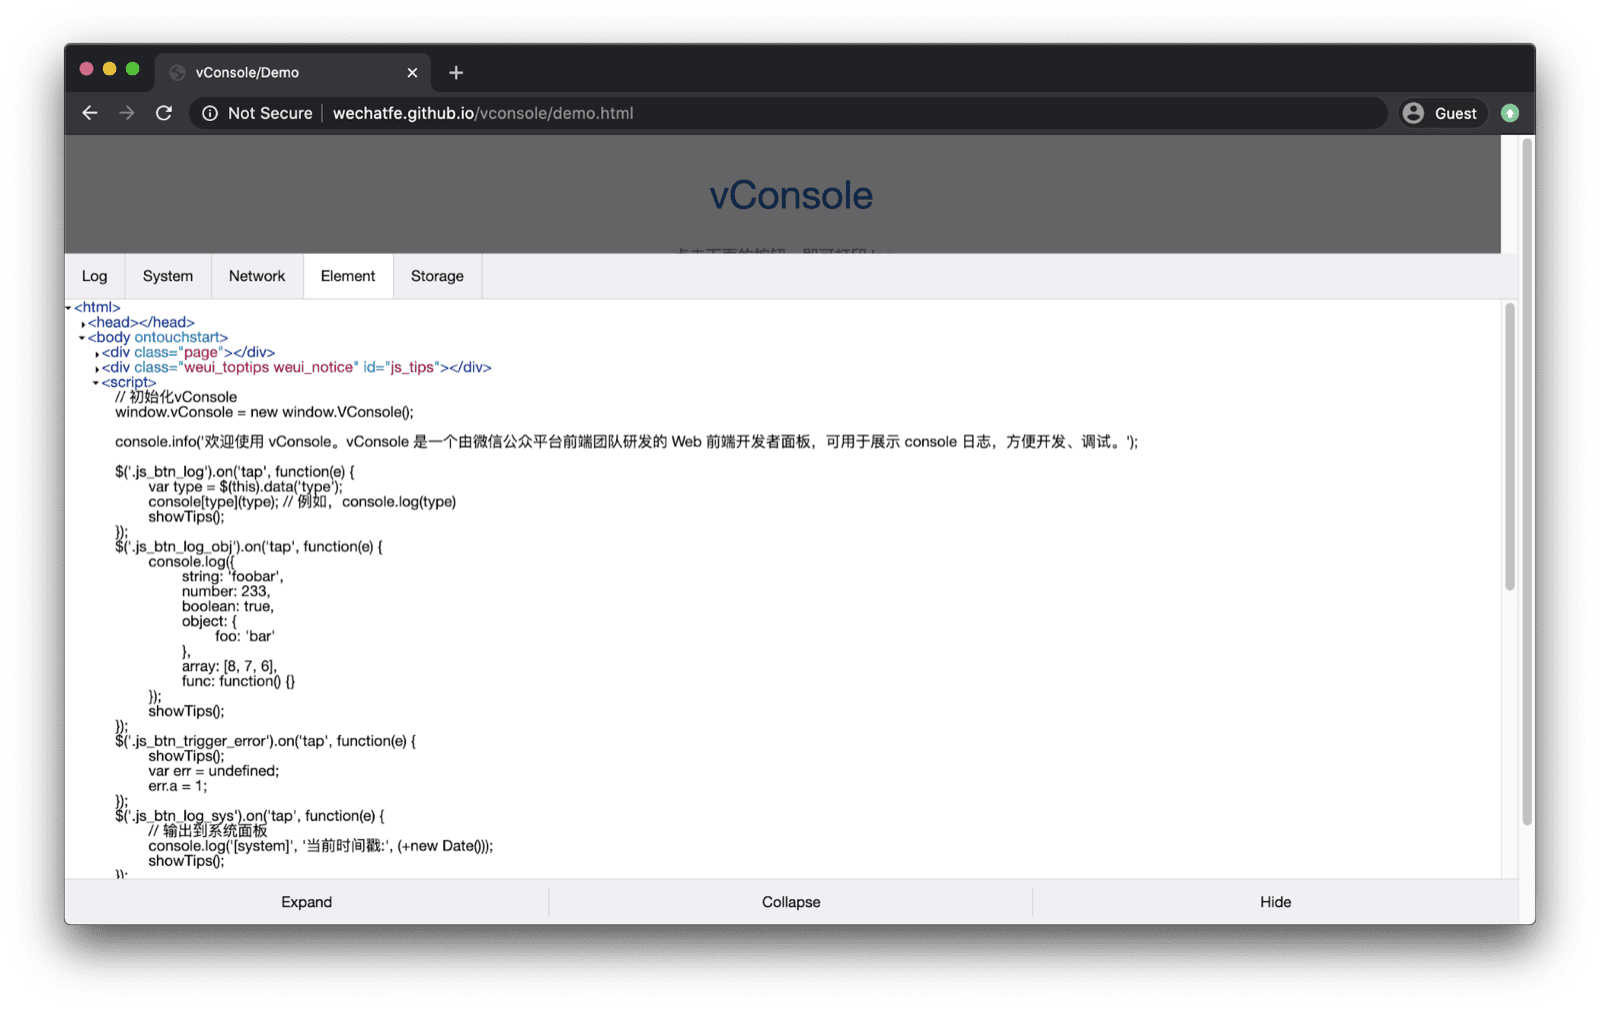 App demo vConsole. vConsole si apre nella parte inferiore e contiene schede per log, sistema, rete, elementi e spazio di archiviazione.